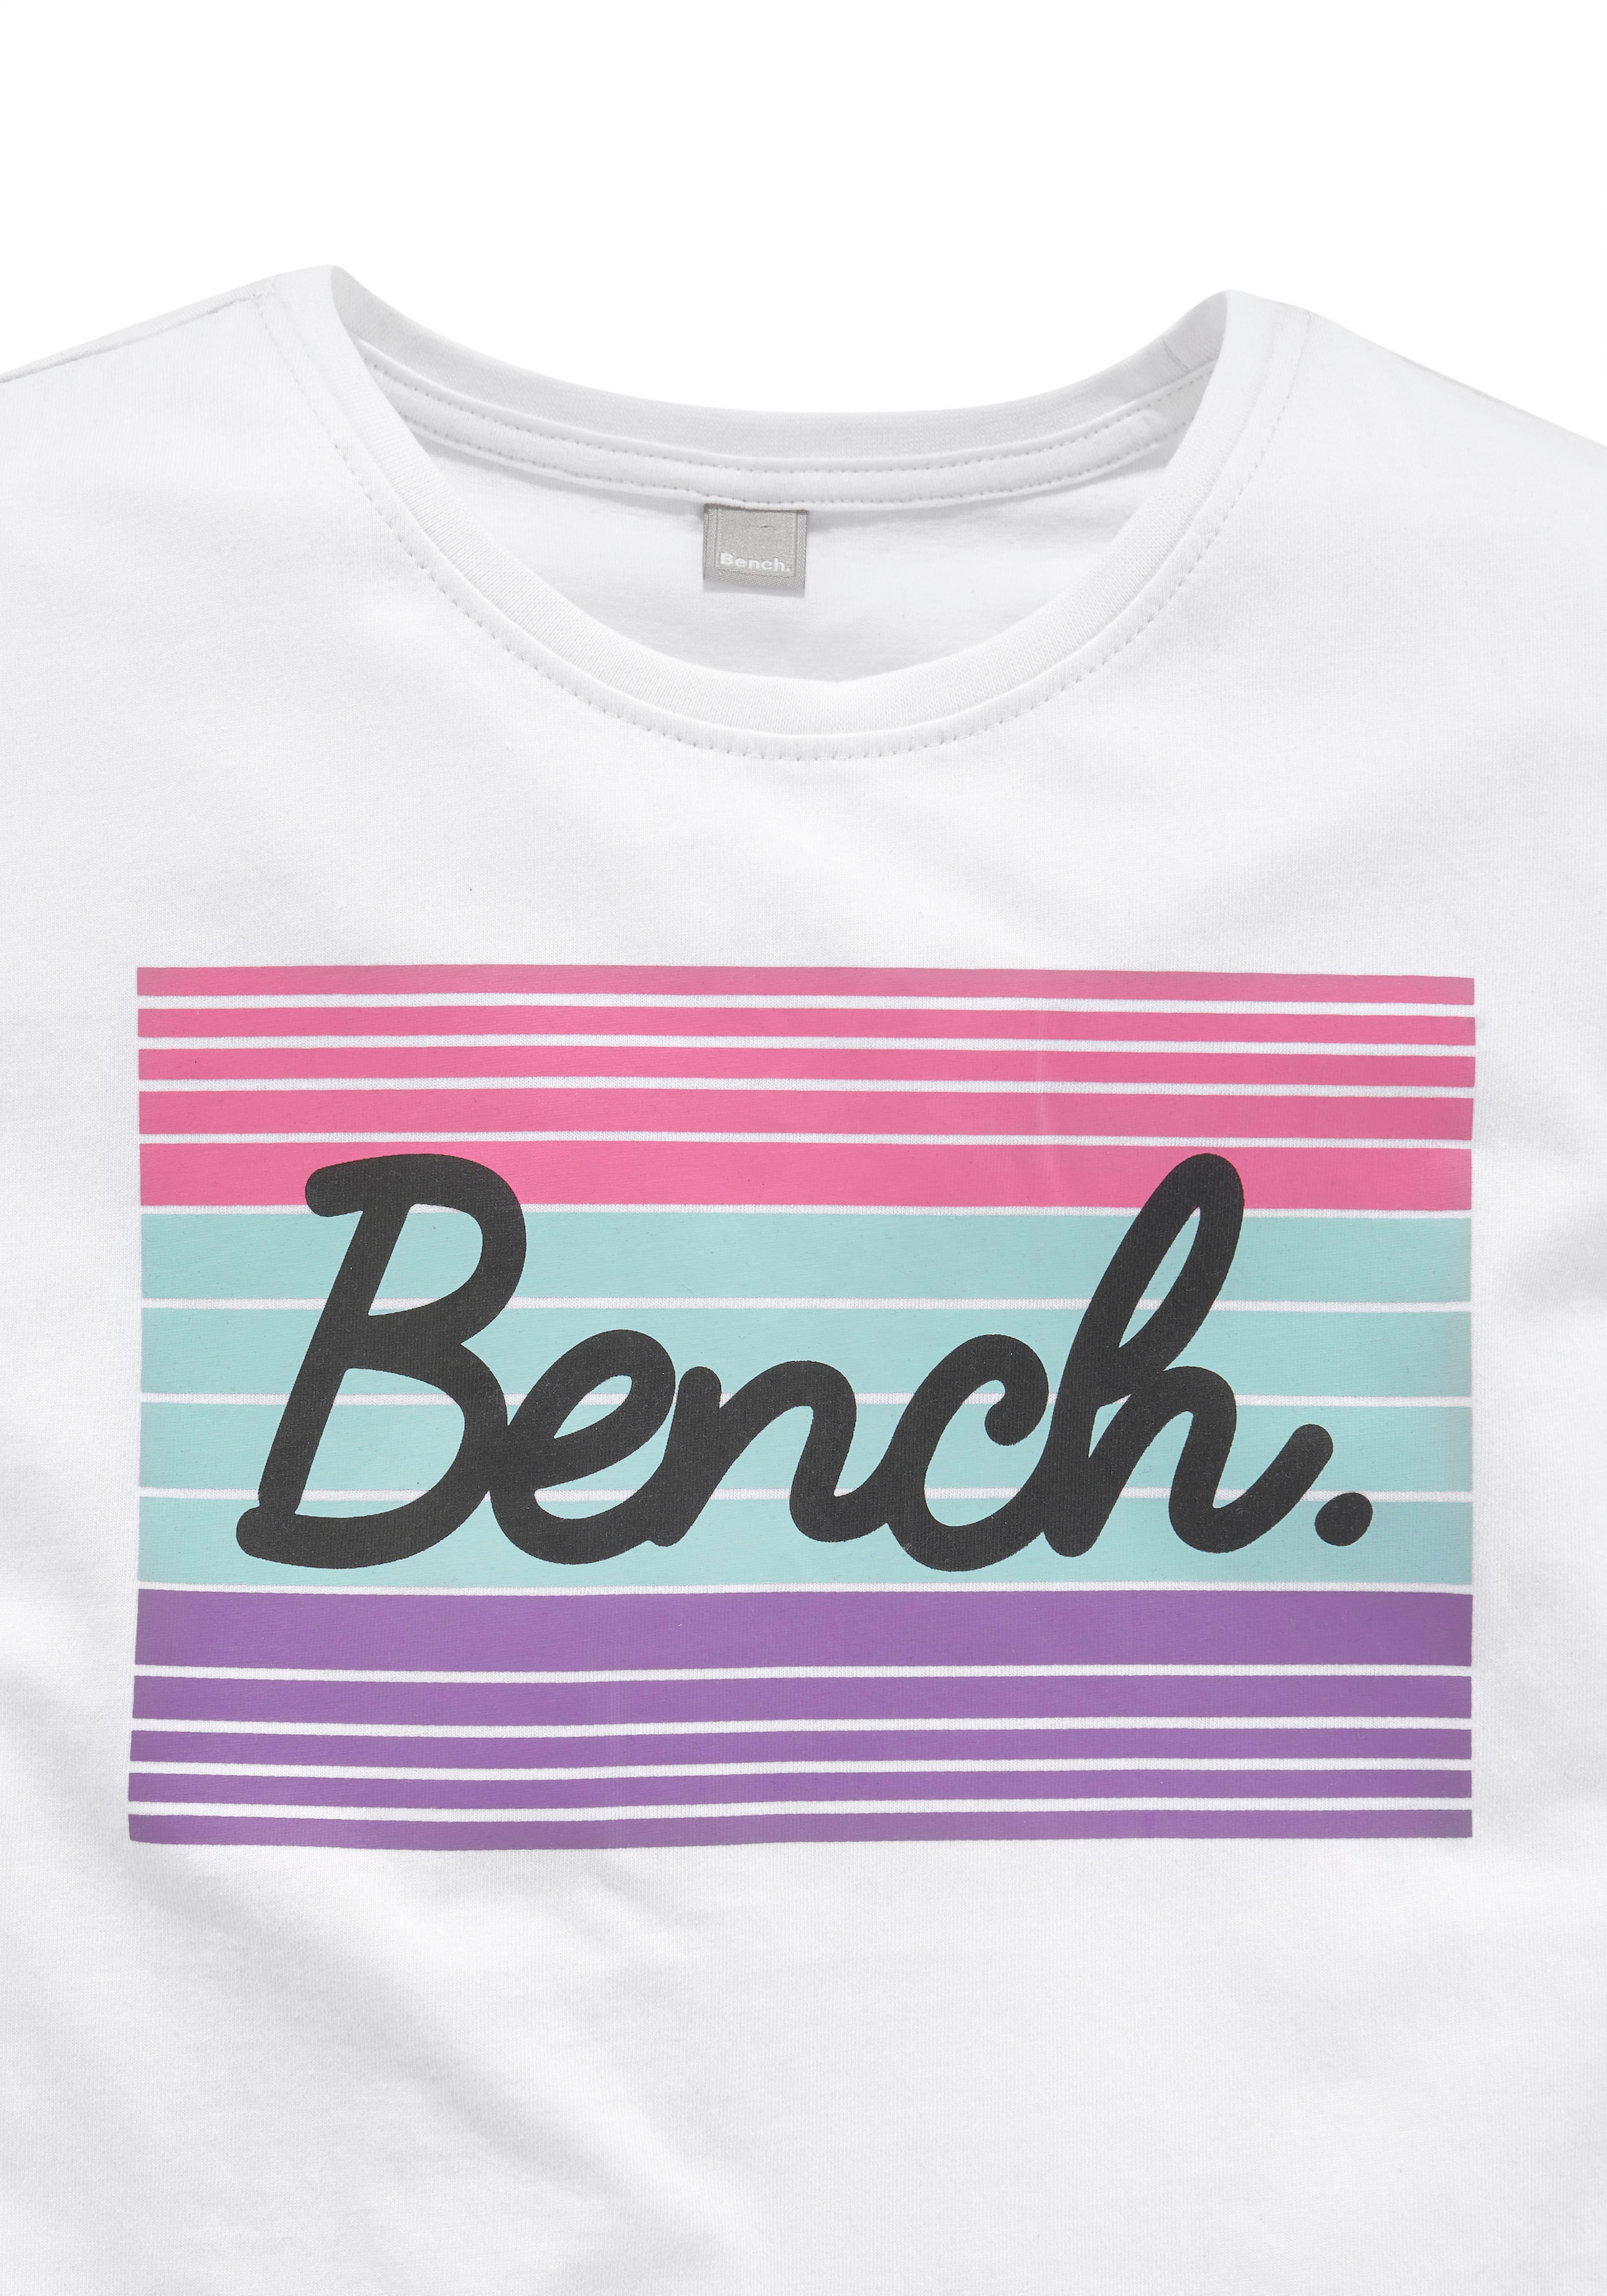 grossem T-Shirt, ✌ en Bench. Acheter ligne mit Logodruck